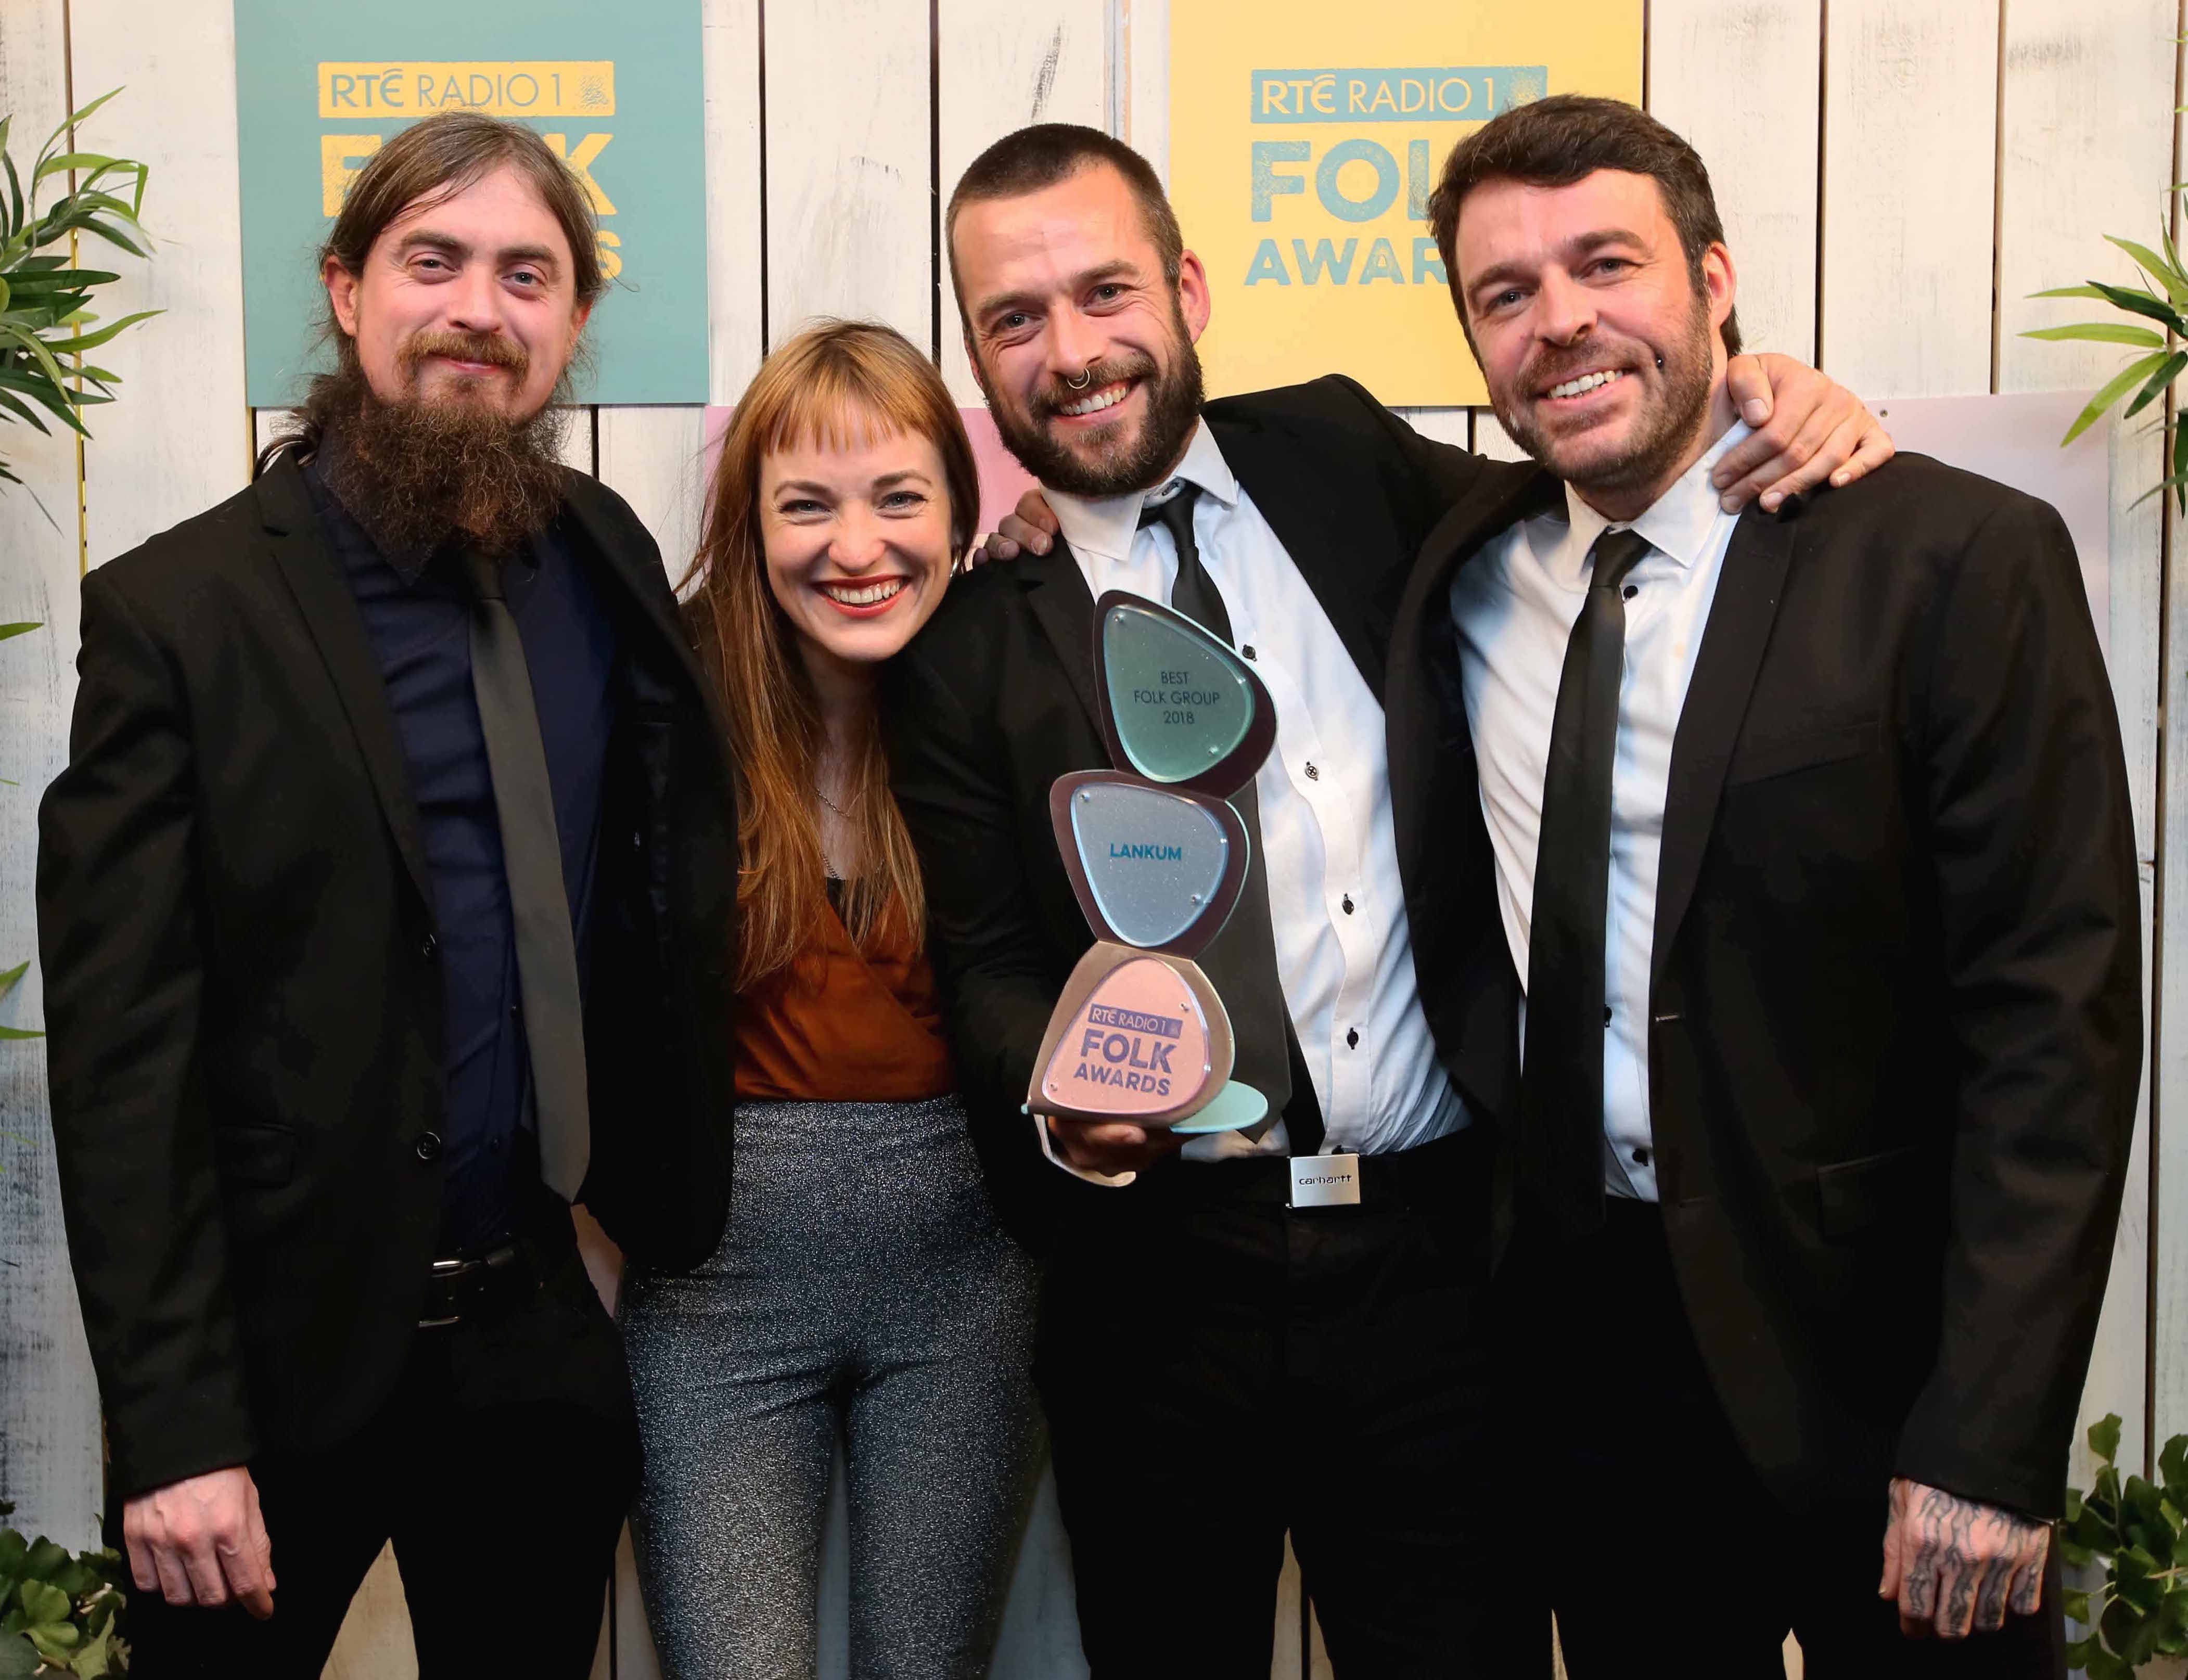 Radie Peat, Lankum, Emma Langford, We Banjo 3 Among Winners at RTÉ Folk Awards